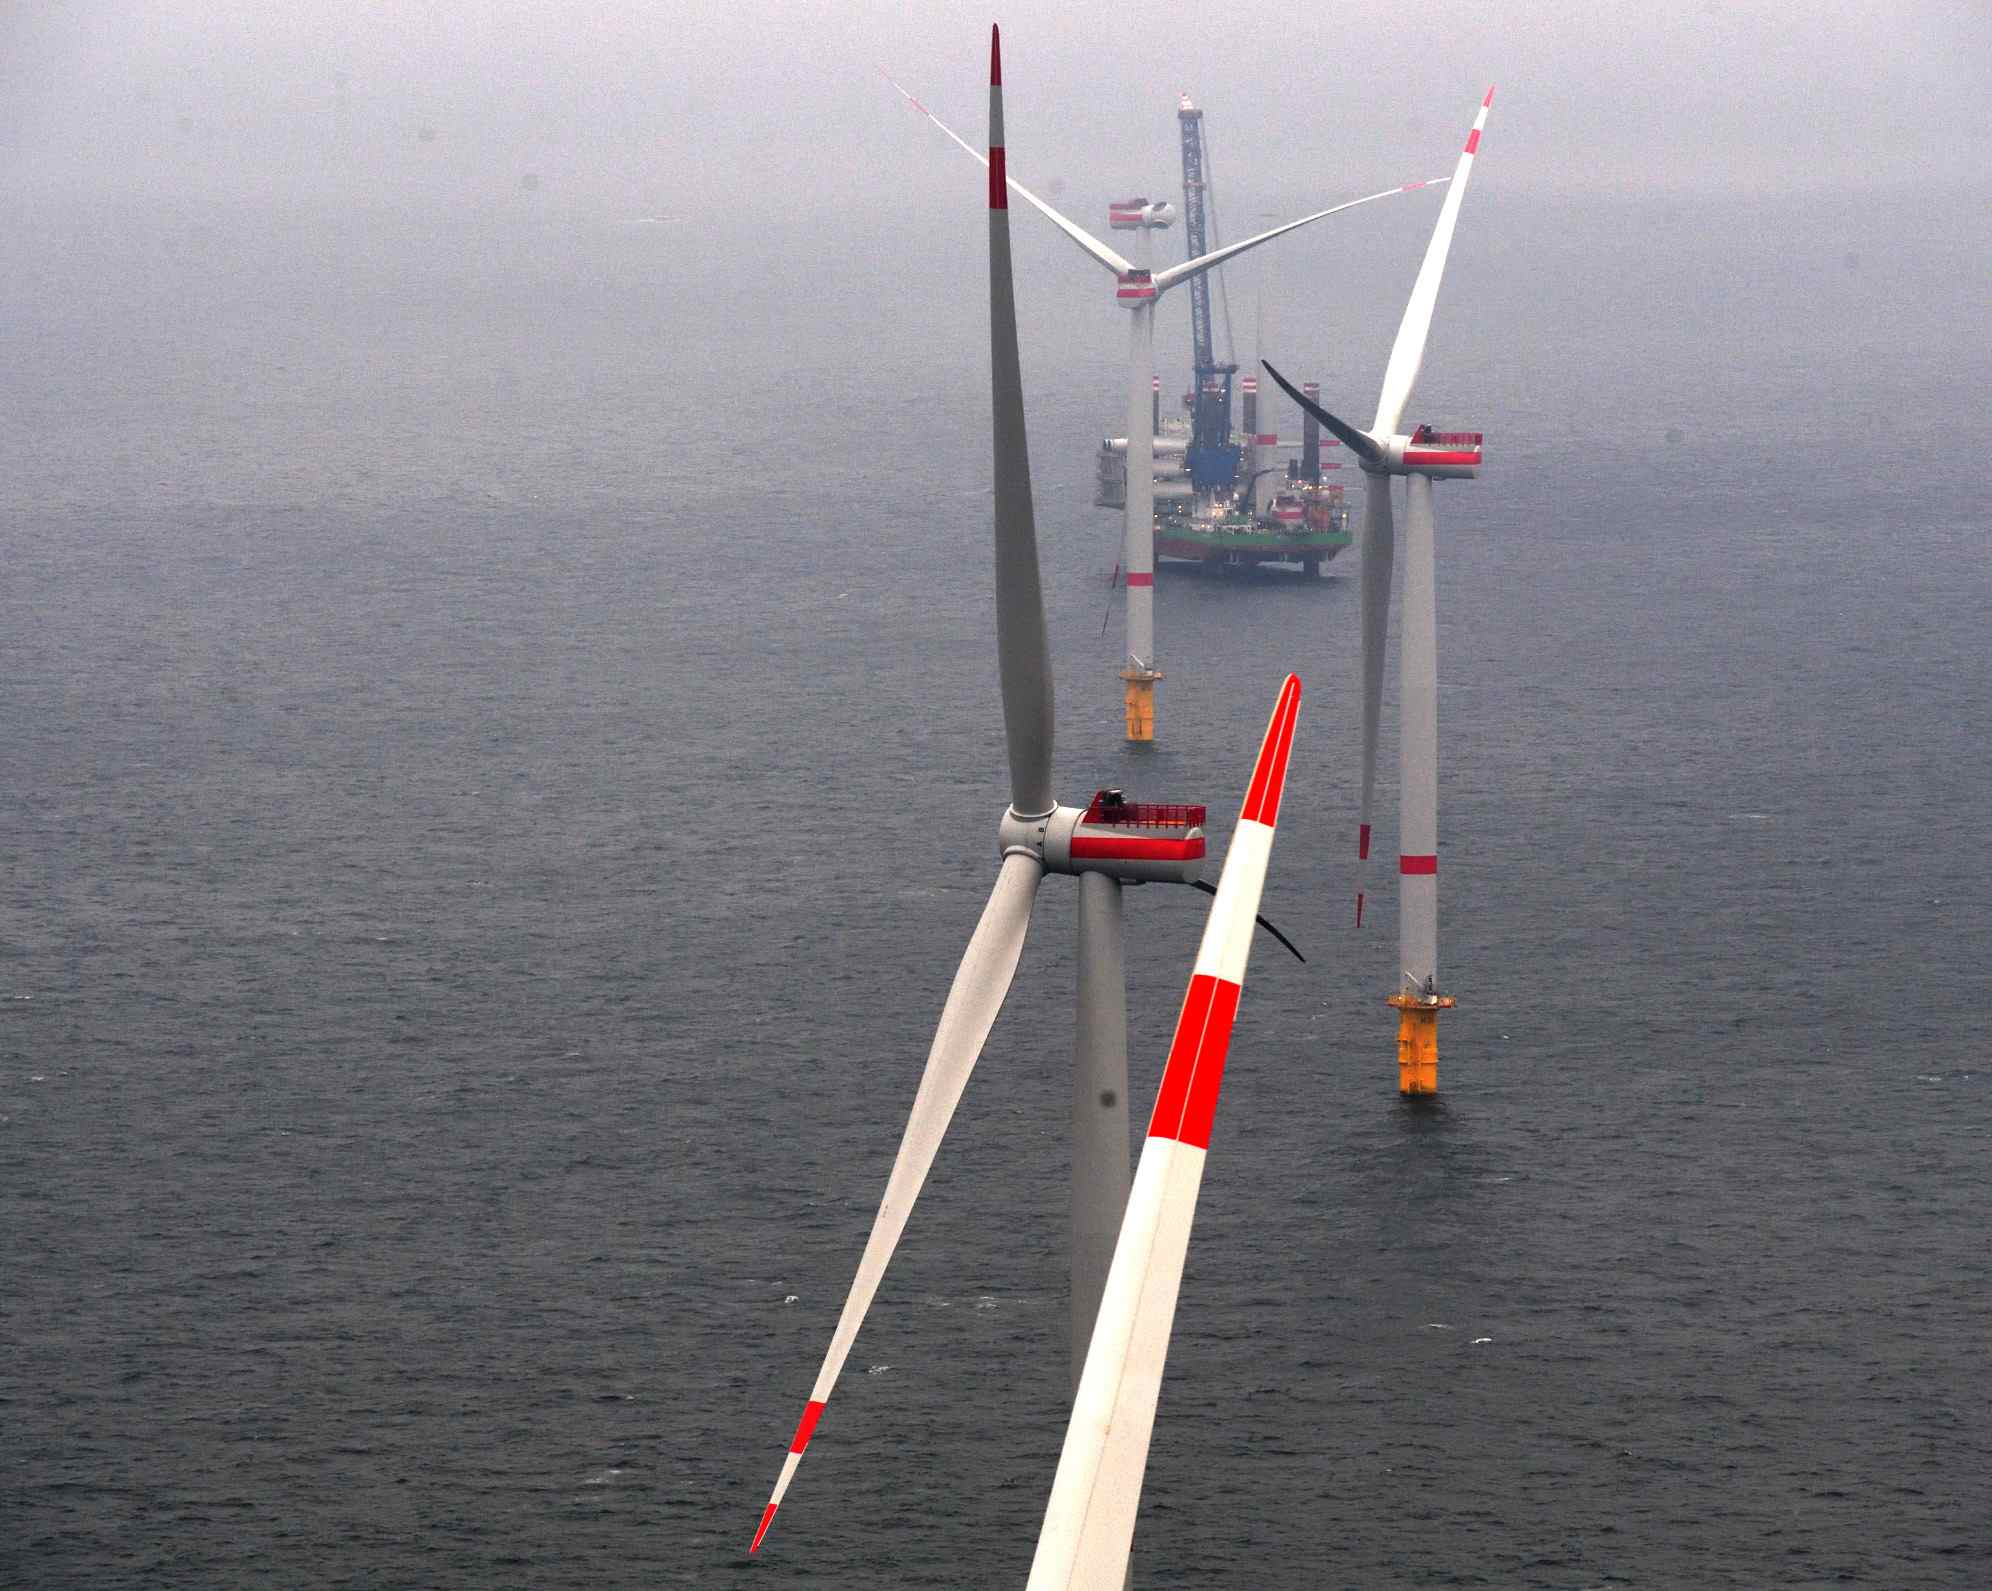 Kaskasi offshore wind farm